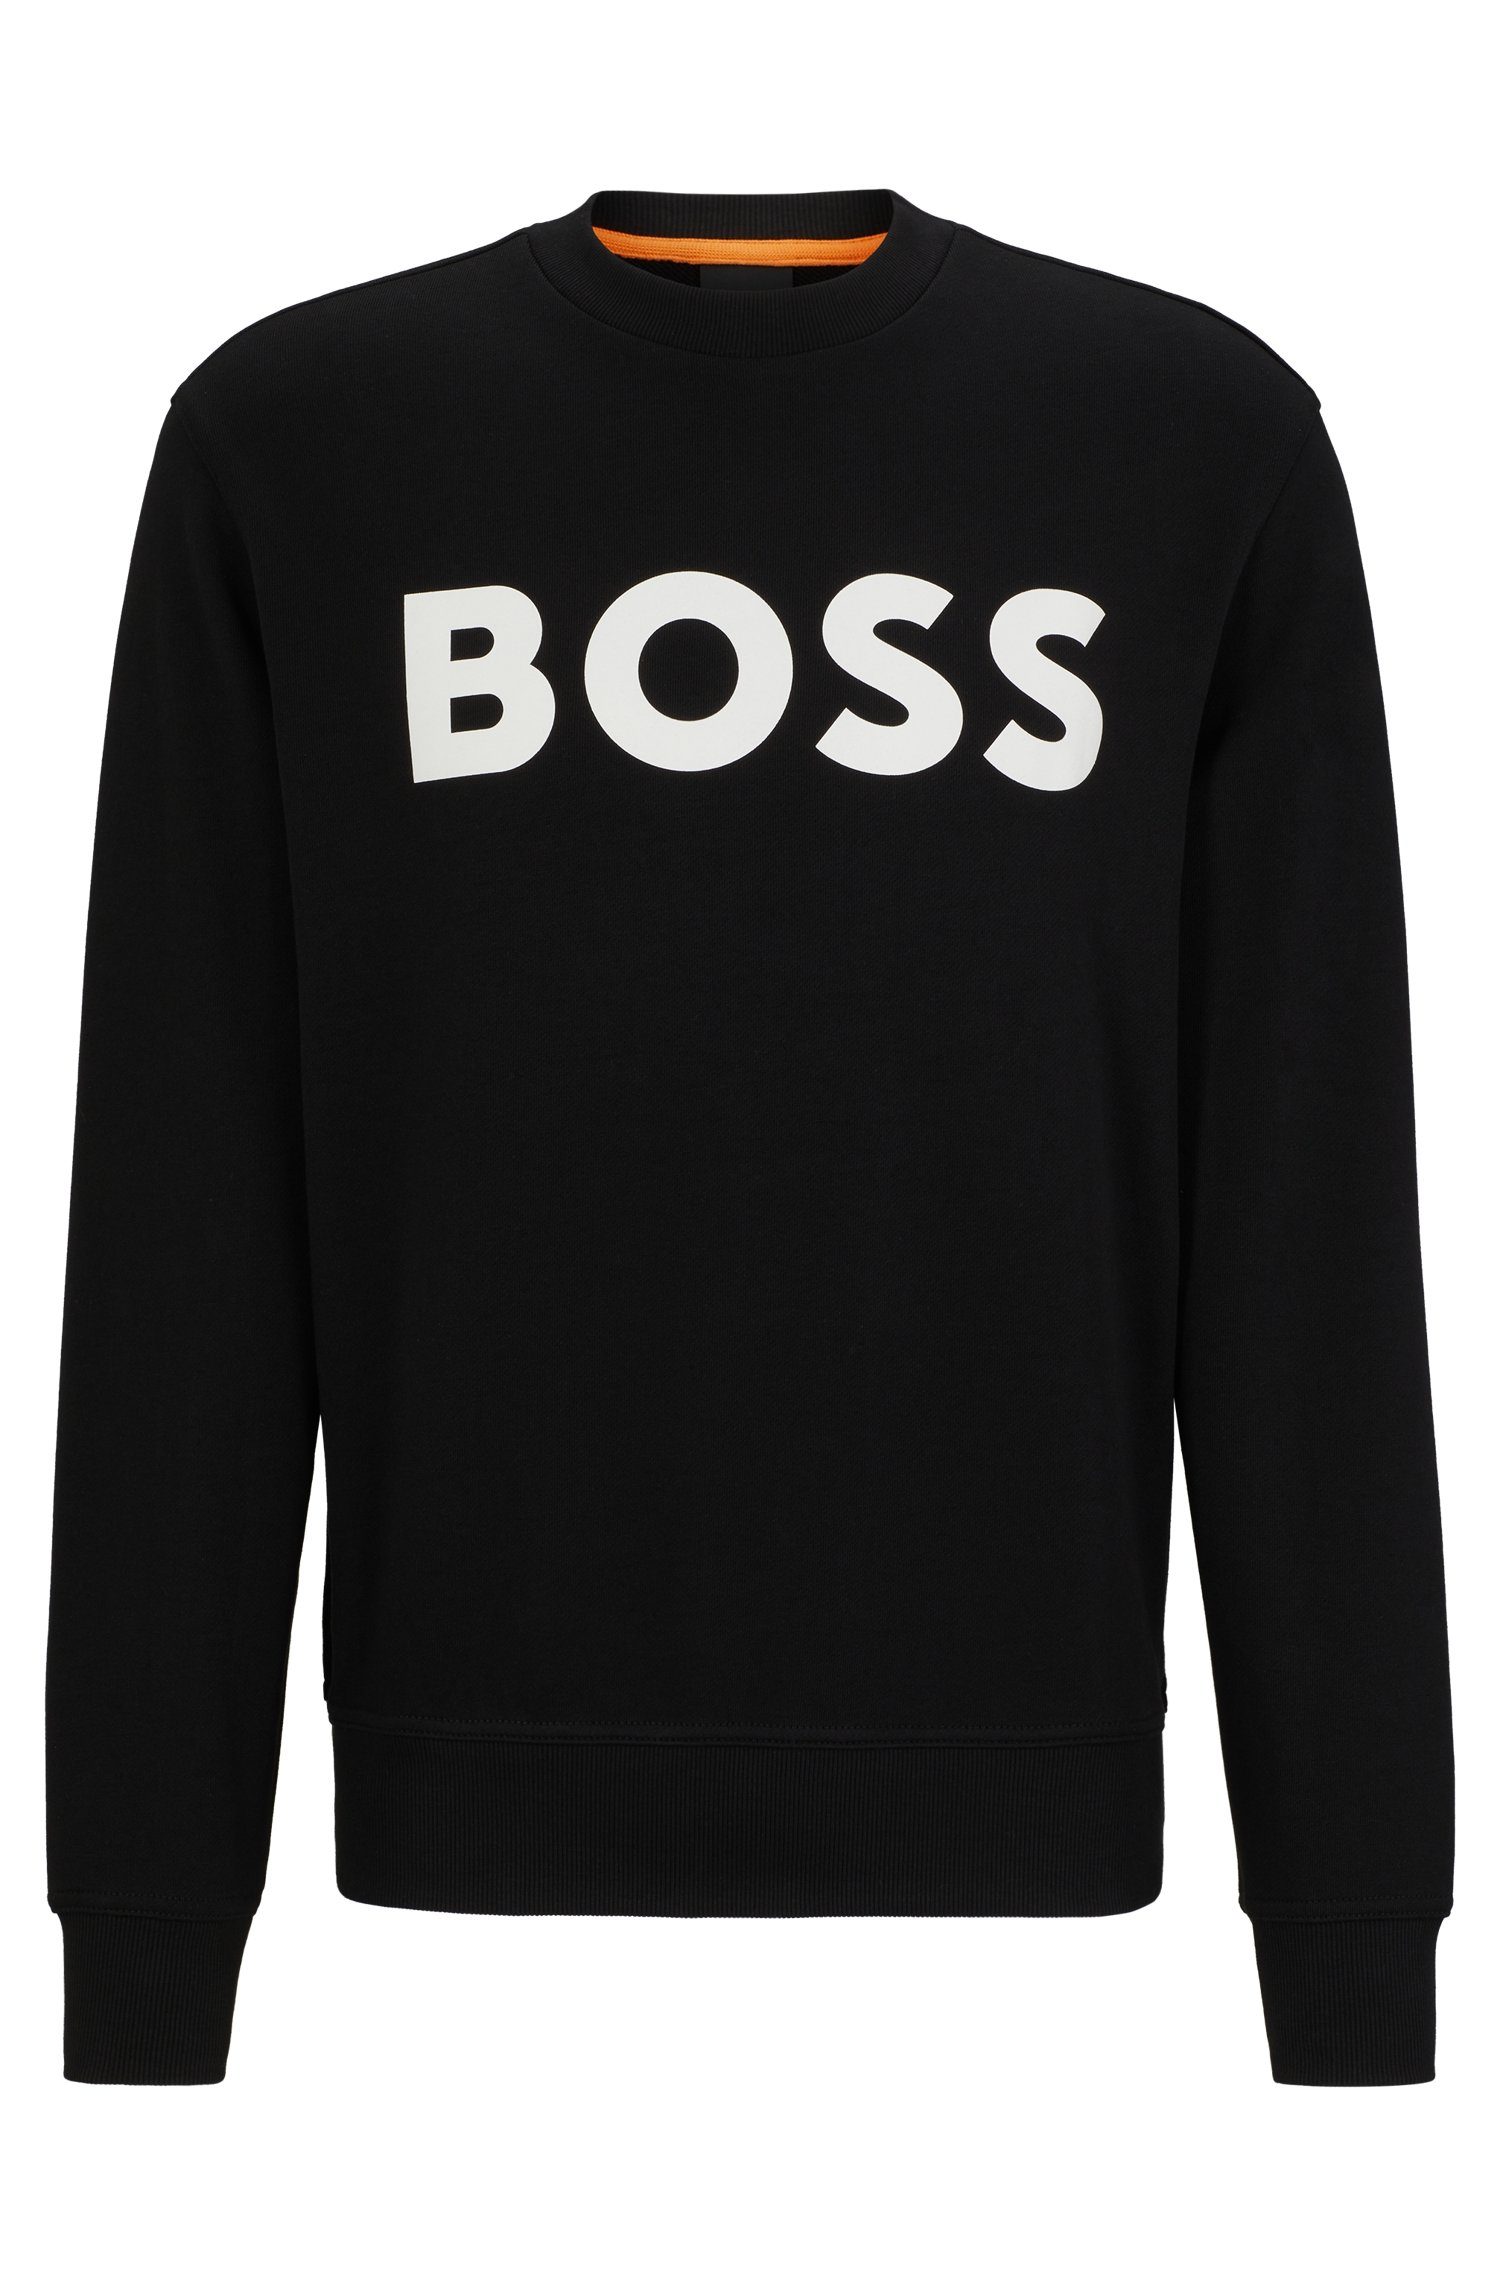 BOSS WeBasicCrew Rundhalsausschnitt Sweatshirt ORANGE mit schwarz